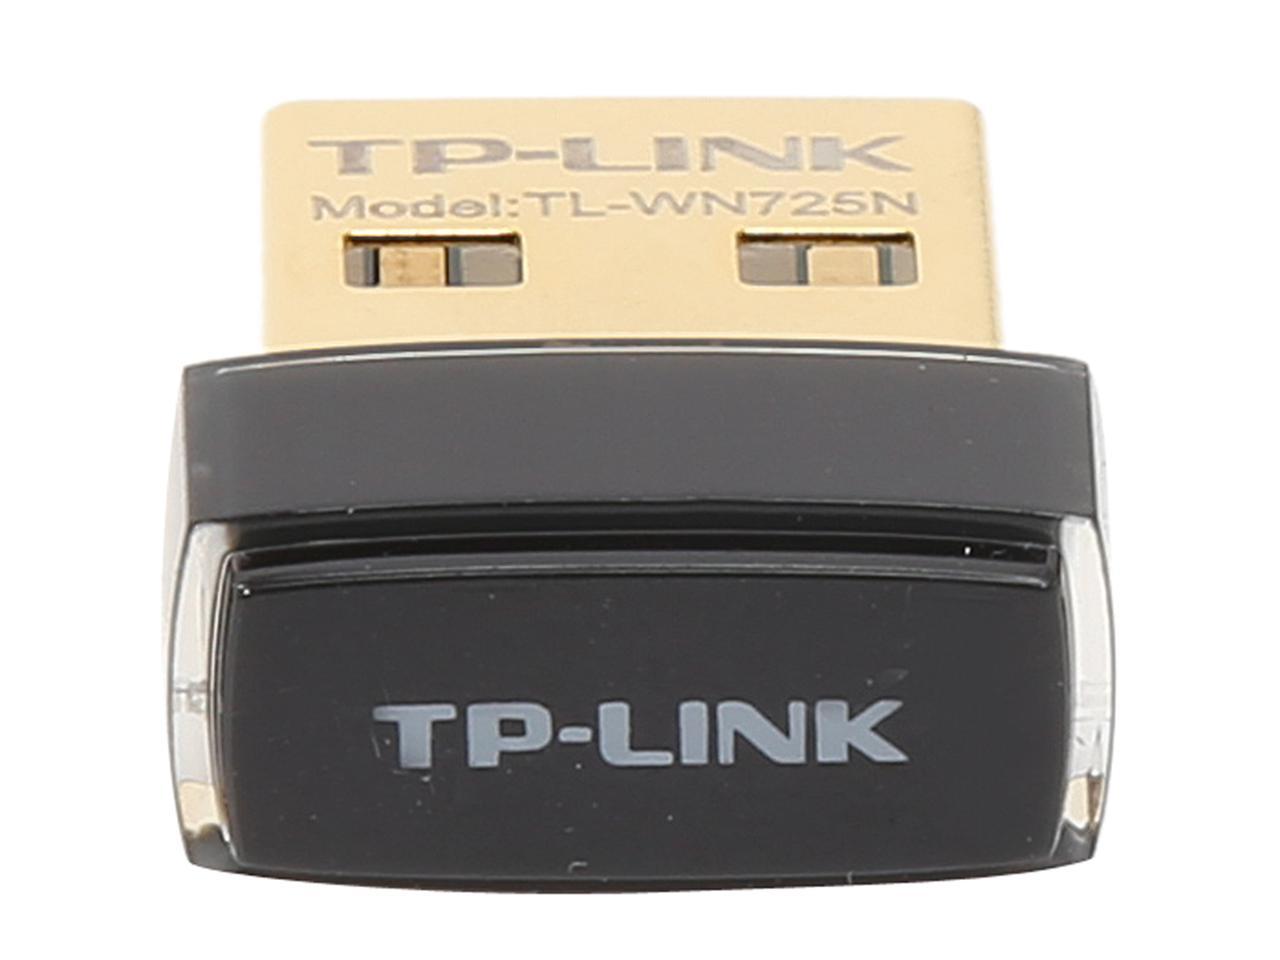 TP-LINK TL-WN725N Nano Wireless N150 Adapter, 150Mbps, IEEE 802.11b/g/n, WEP, WPA / WPA2, Plug & Play in Windows 10 (32 bit & 64 bit) - image 2 of 5